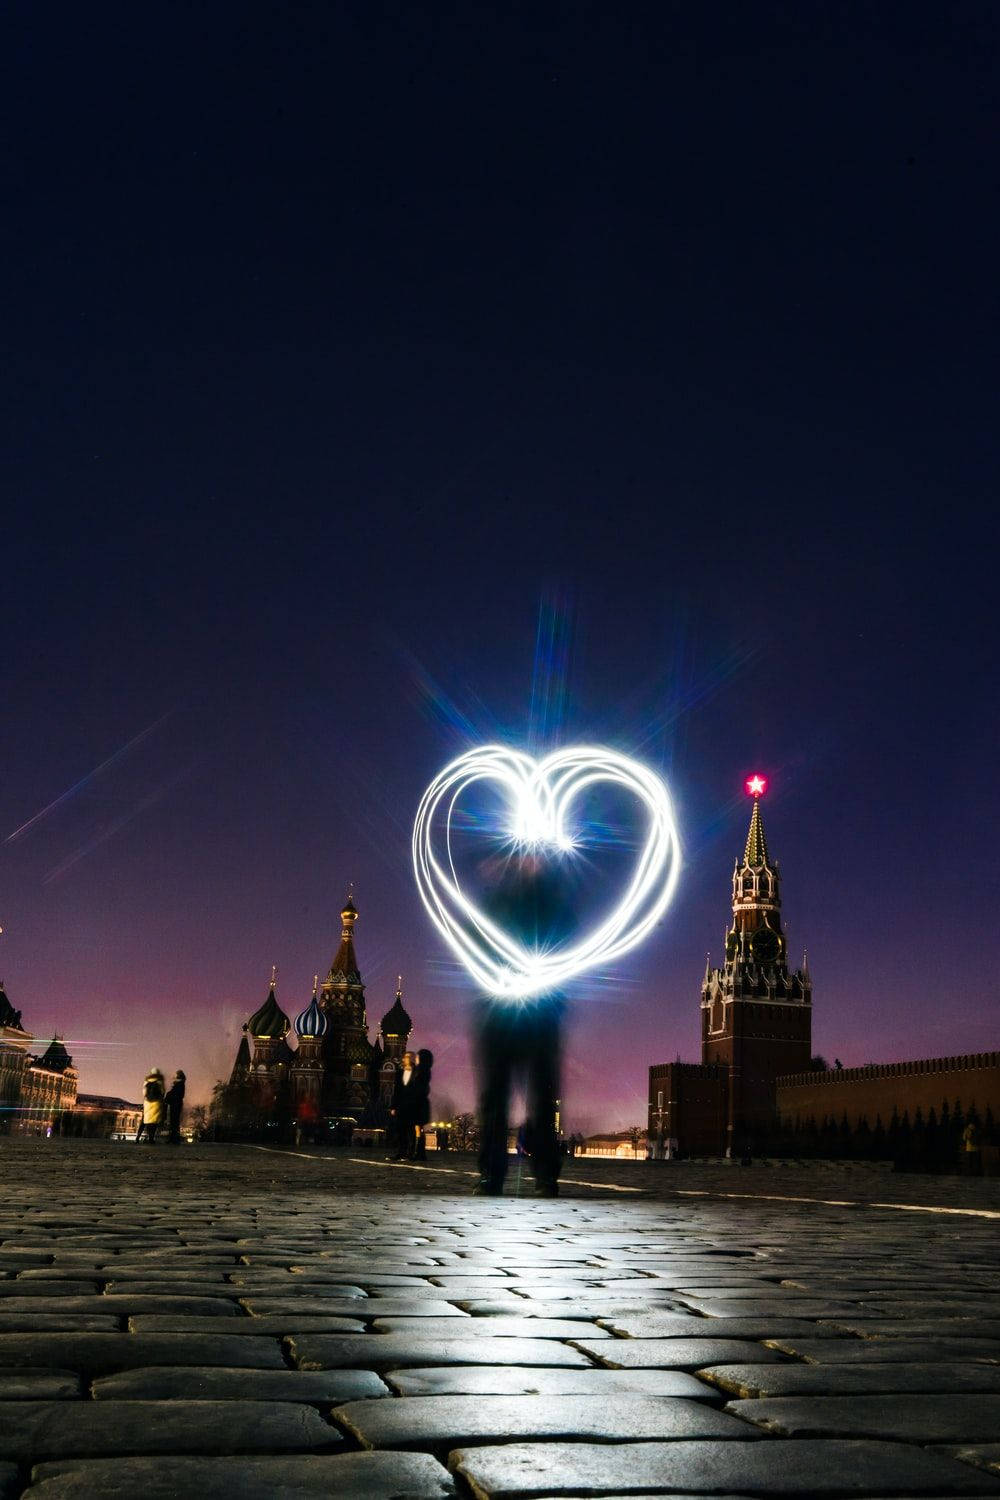 Caption: Illuminated Heart On Indie Phone Background